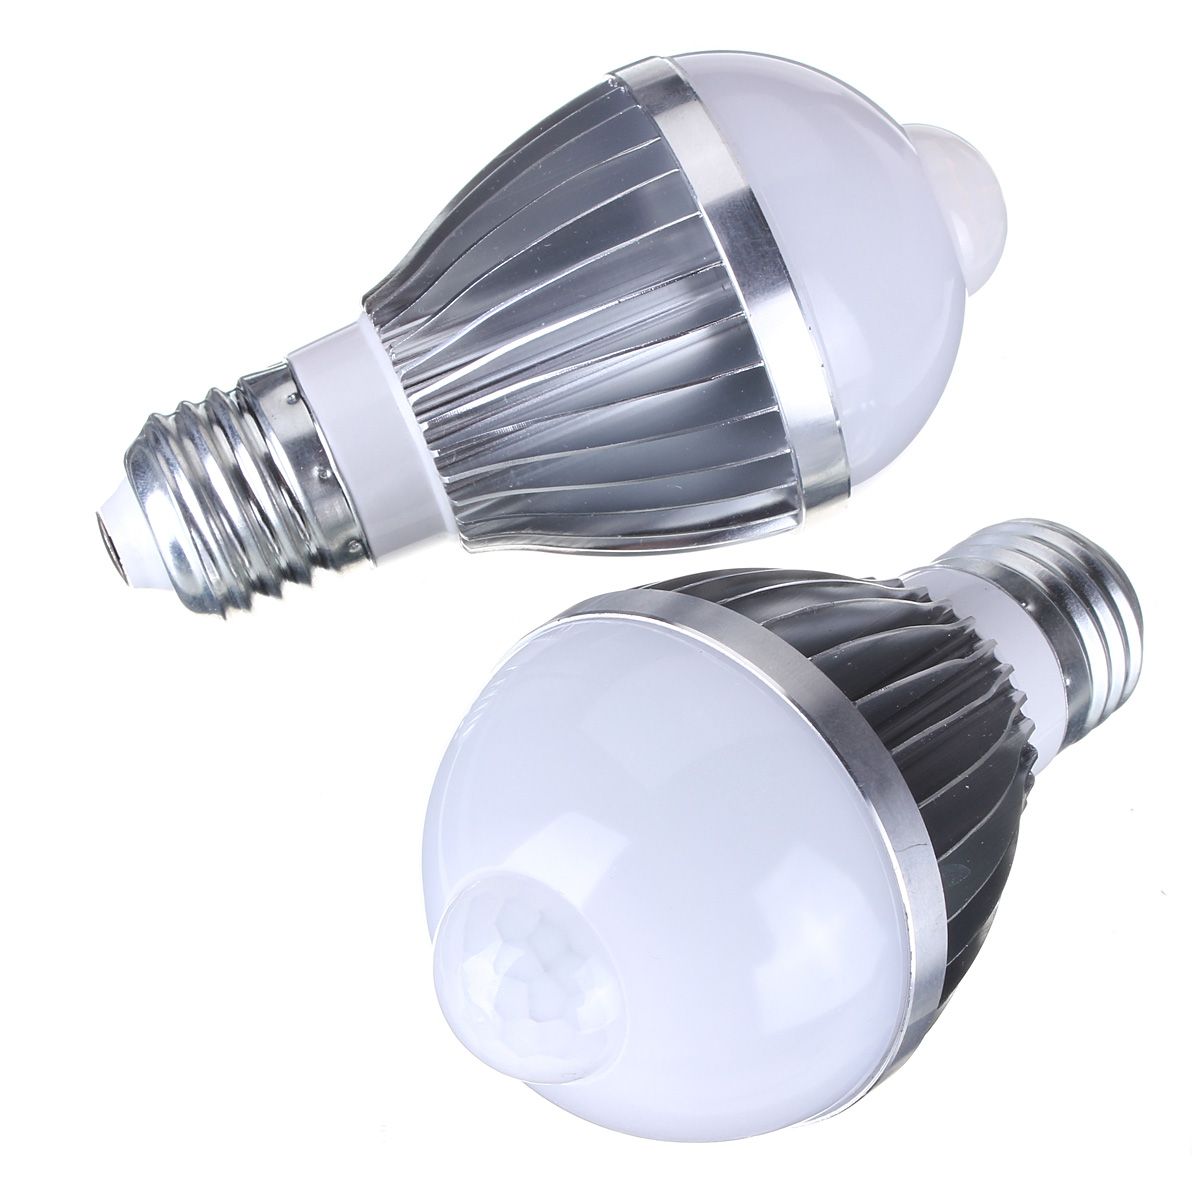 E27-5W-Auto-PIR-Infrared-Motion-Sensor-Detection-LED-Bulb-Lamp-85-265V-967691